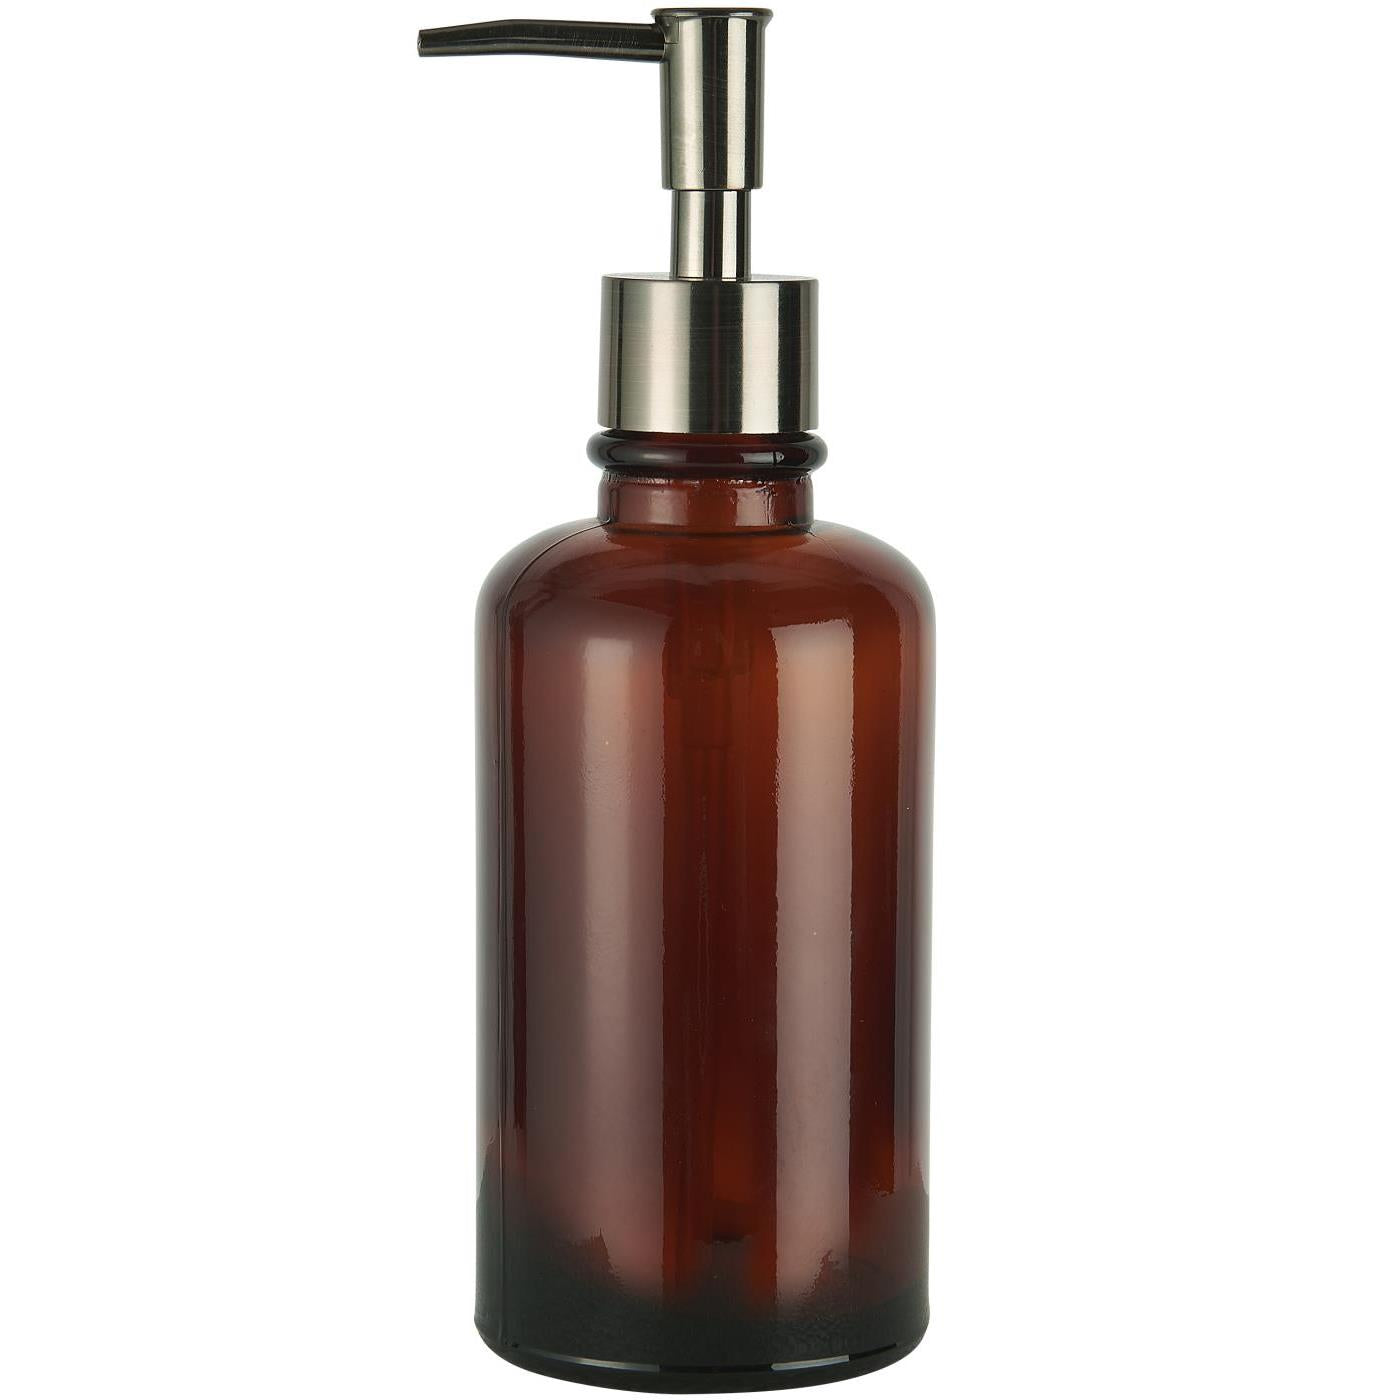 Ib Laursen - Soap bottle - brown glass